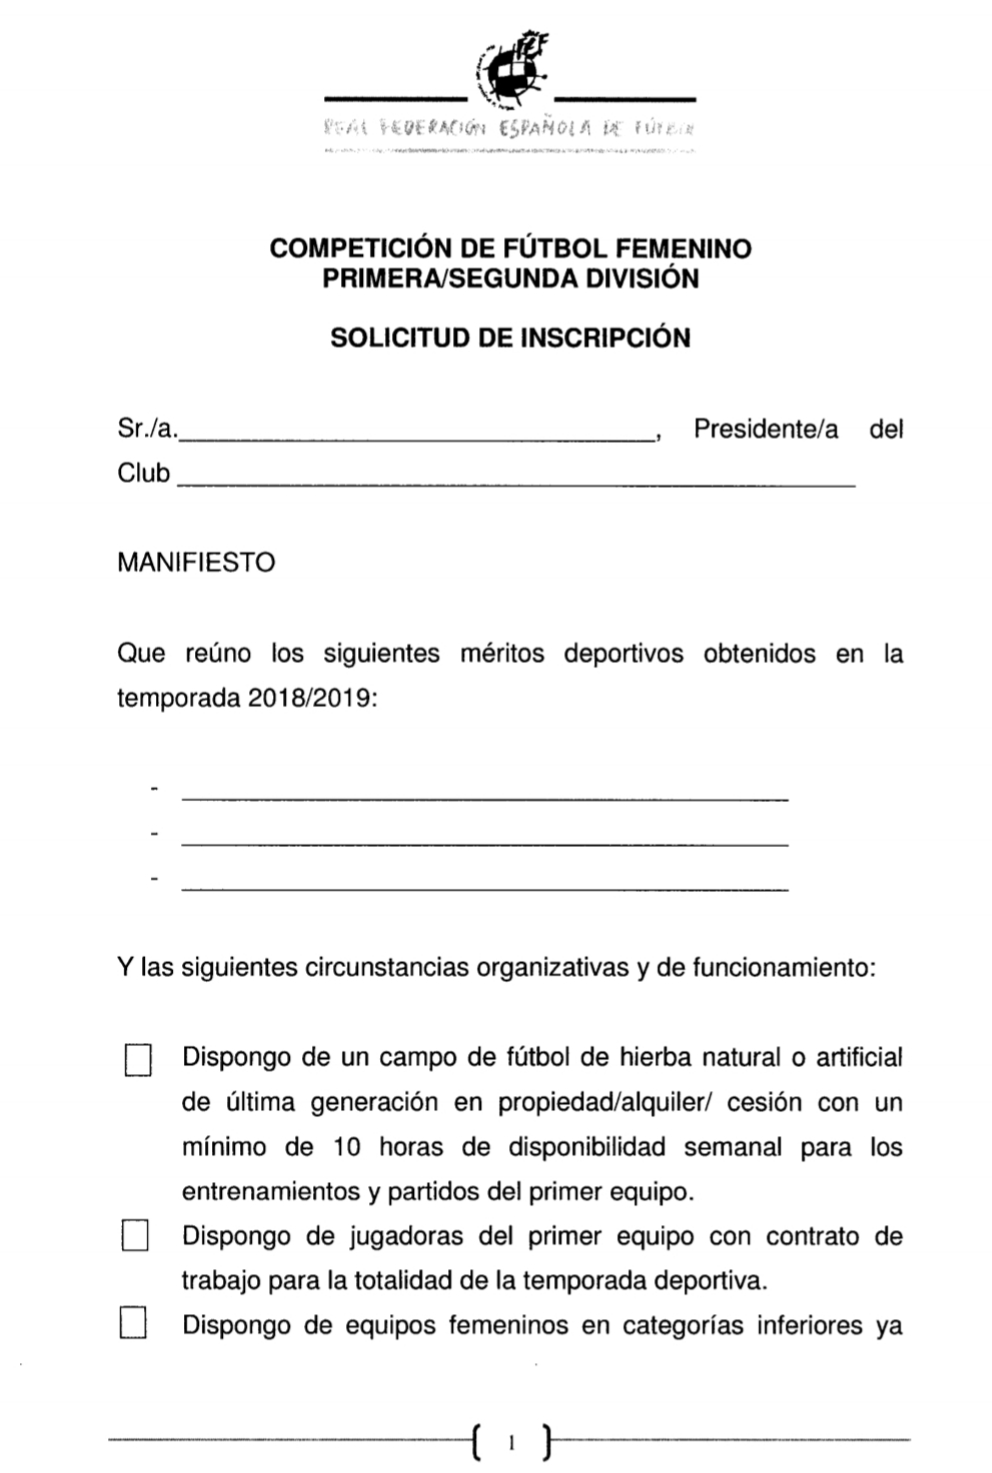 El Rayo Femenino tiene hasta el 15 de julio para inscribirse en la Liga PRO  - Matagigantes - Medio de comunicación independiente del Rayo Vallecano